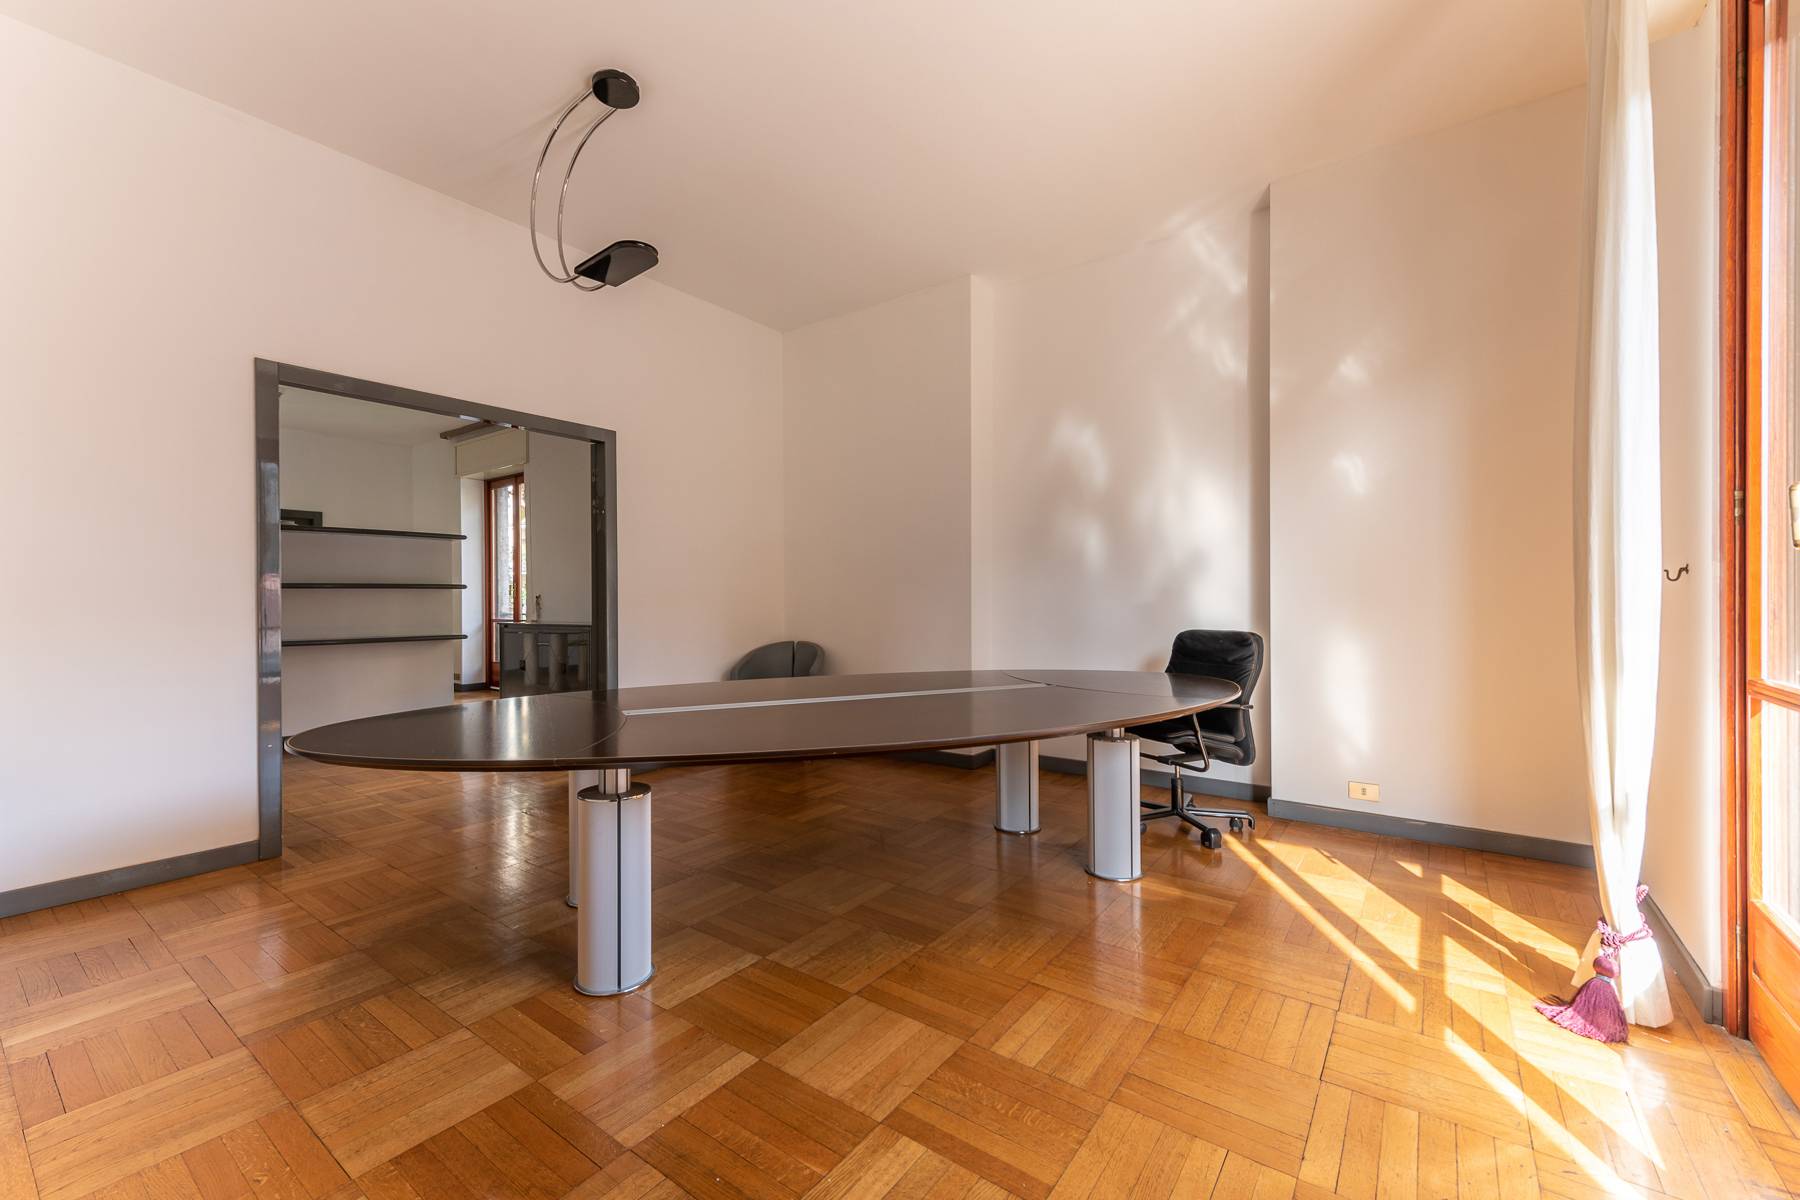 Ufficio-studio in Affitto a Milano: 5 locali, 206 mq - Foto 4